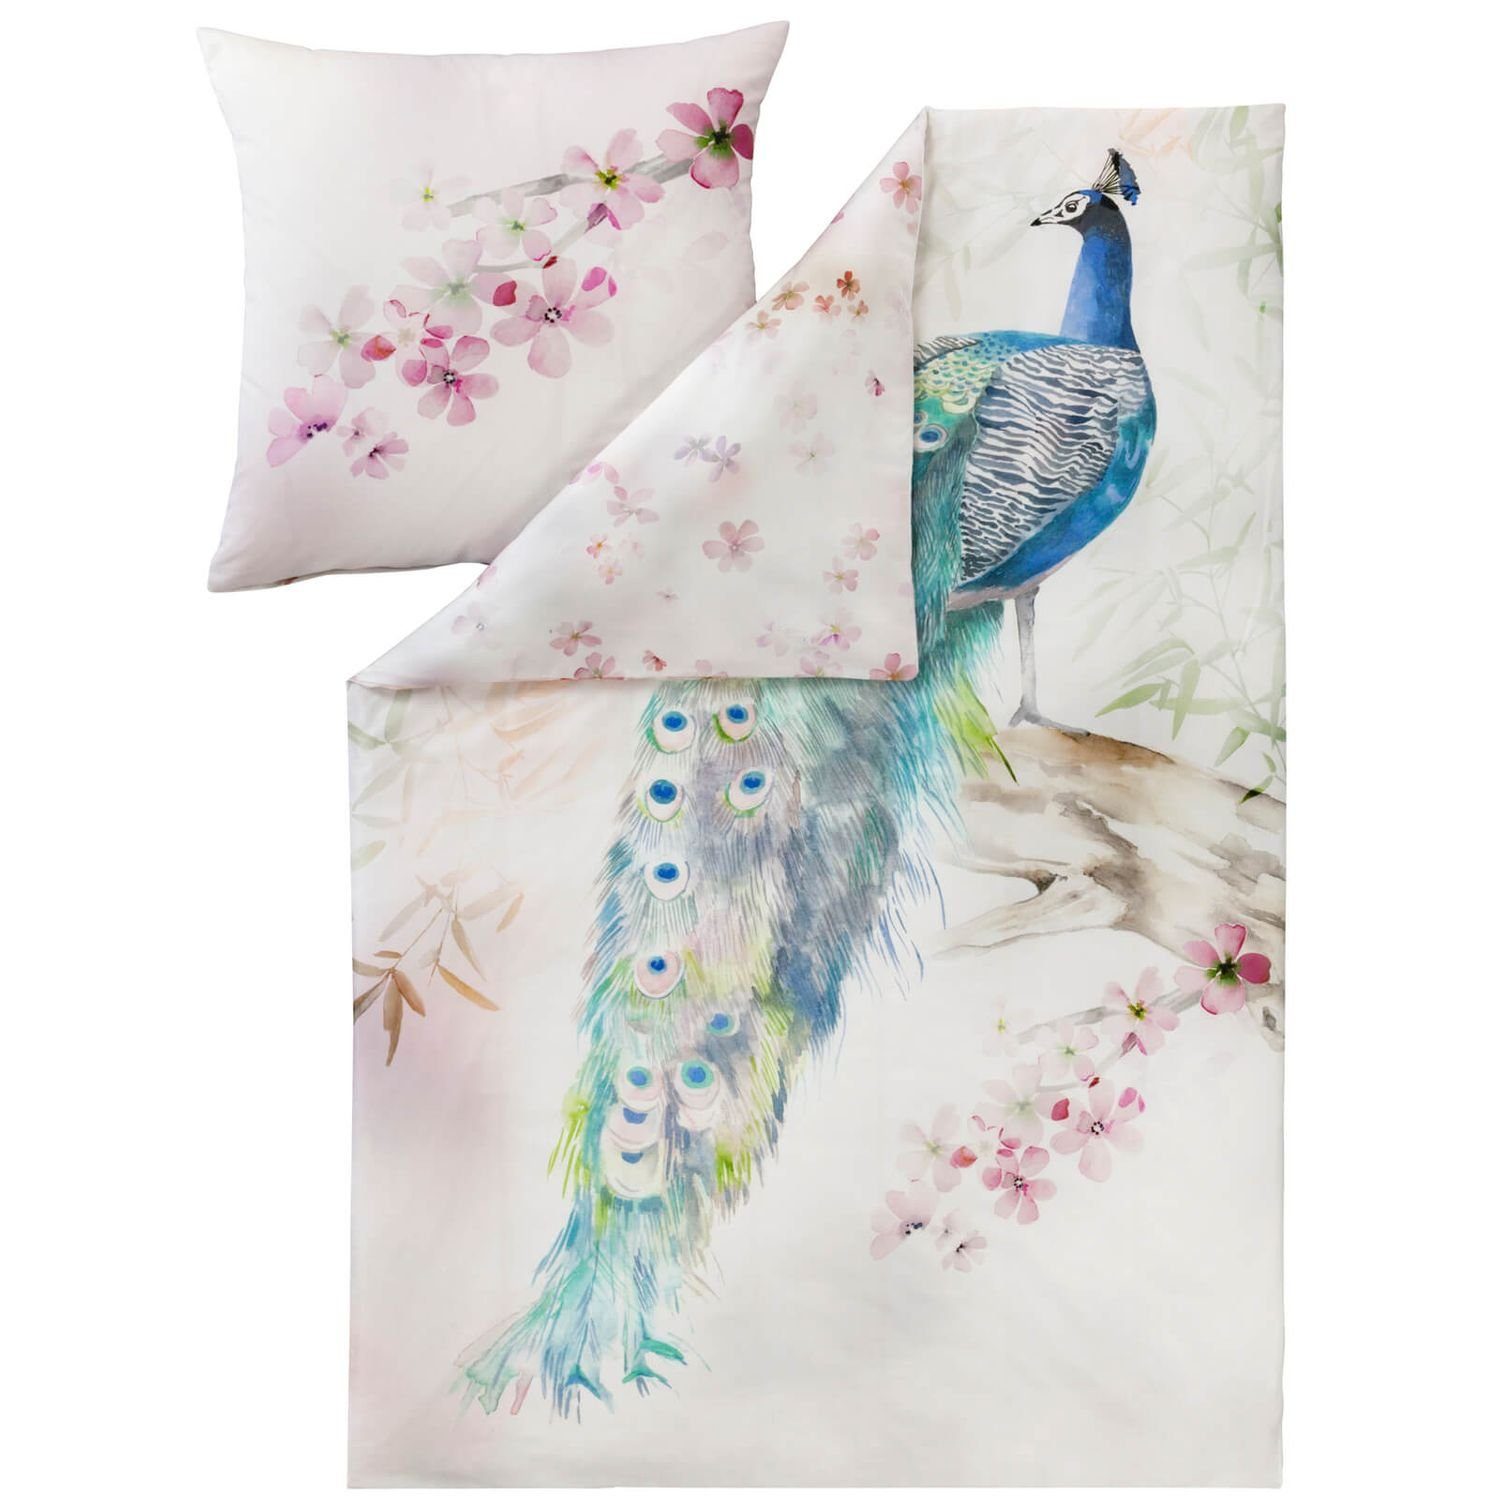 Bettwäsche »Peacock 4733 985 Multicolor«, Estella, Pfau, Federn Blüten  online kaufen | OTTO